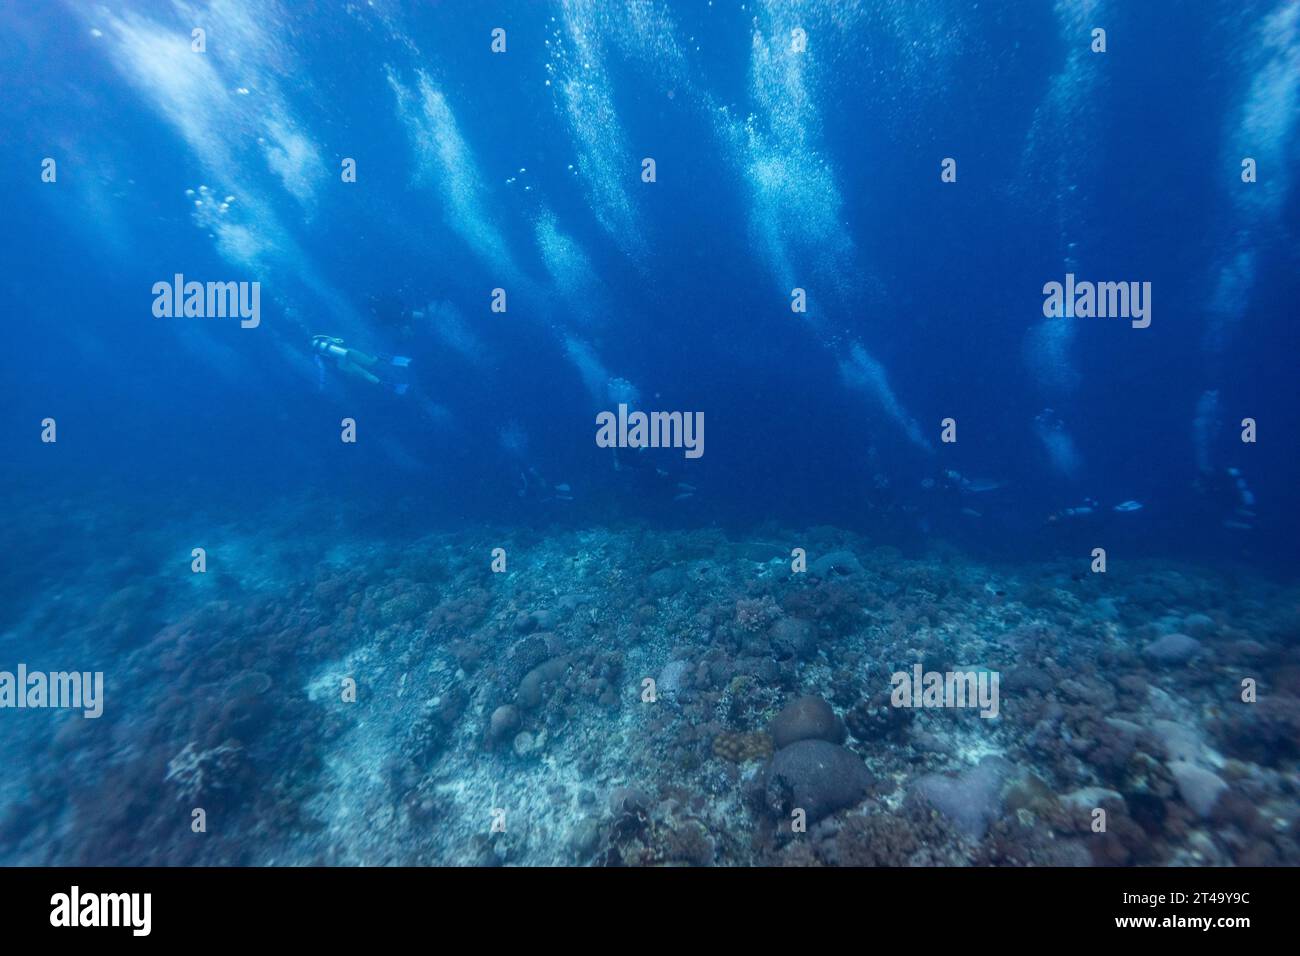 Des bulles montent d'en bas alors qu'un groupe de plongeurs nage le long du bord d'un récif corallien en regardant un mur de chute dans le bleu profond Banque D'Images